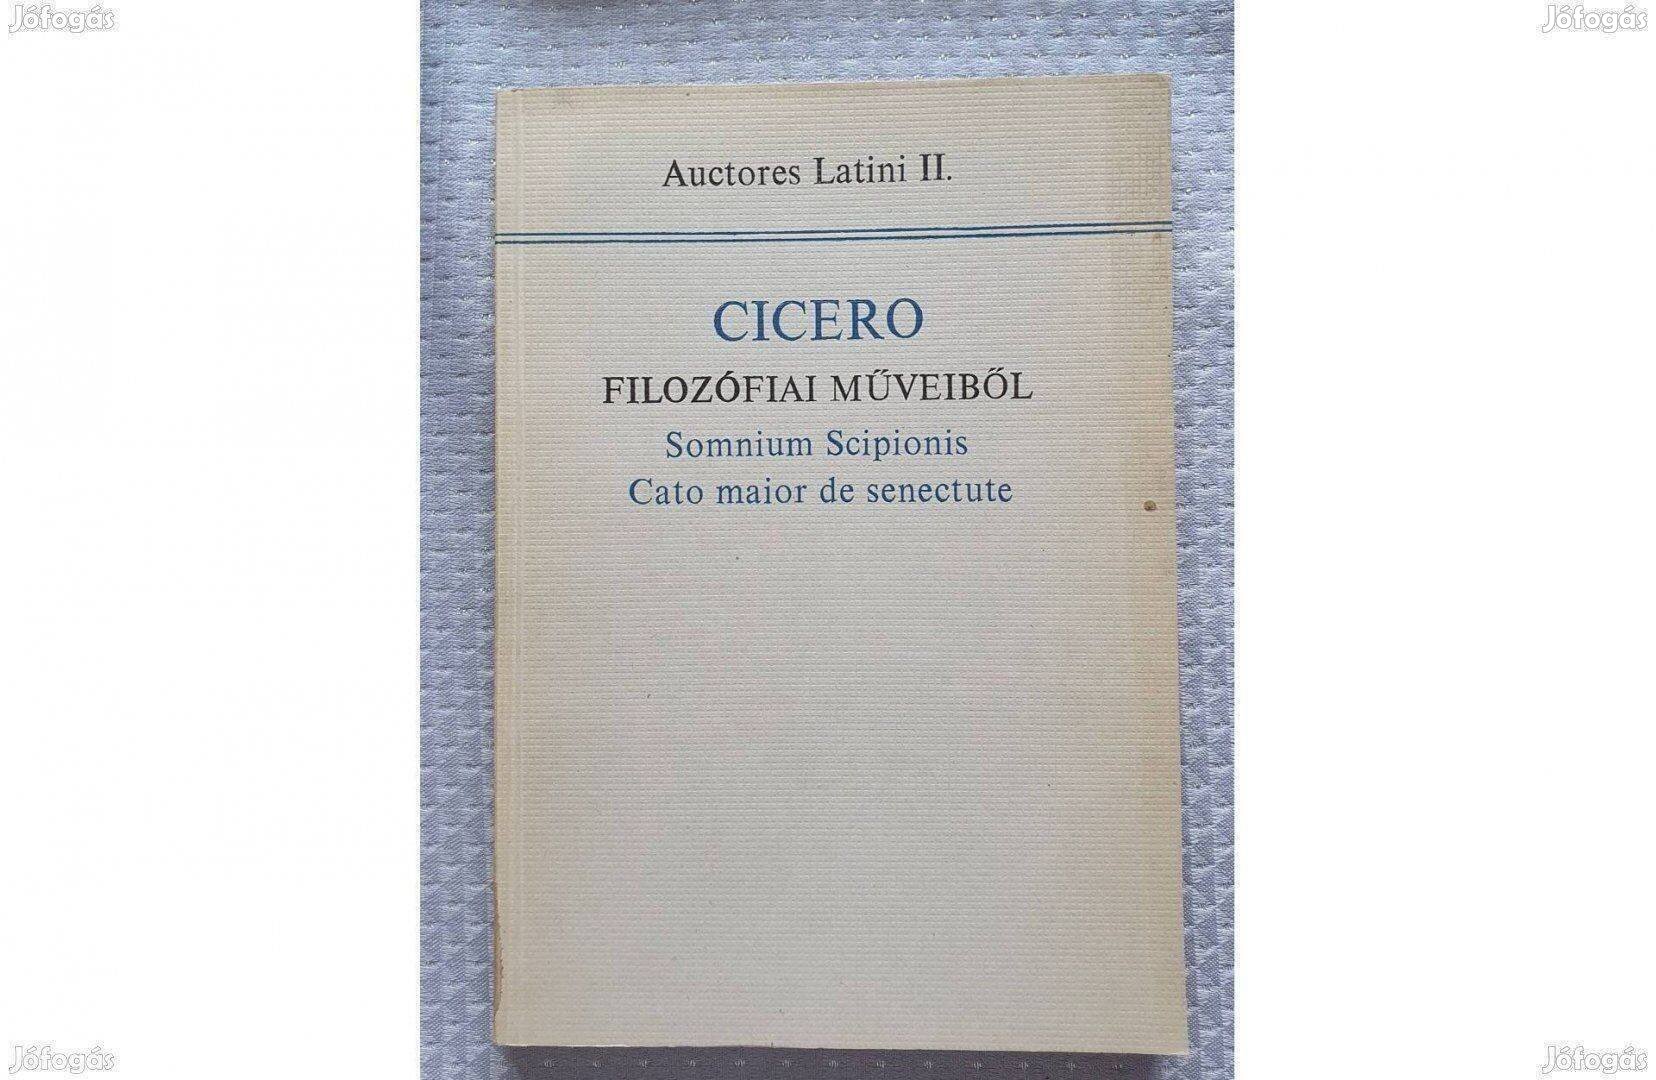 Cicero Filozófiai Műveiből latin-magyar nyelvű 1967